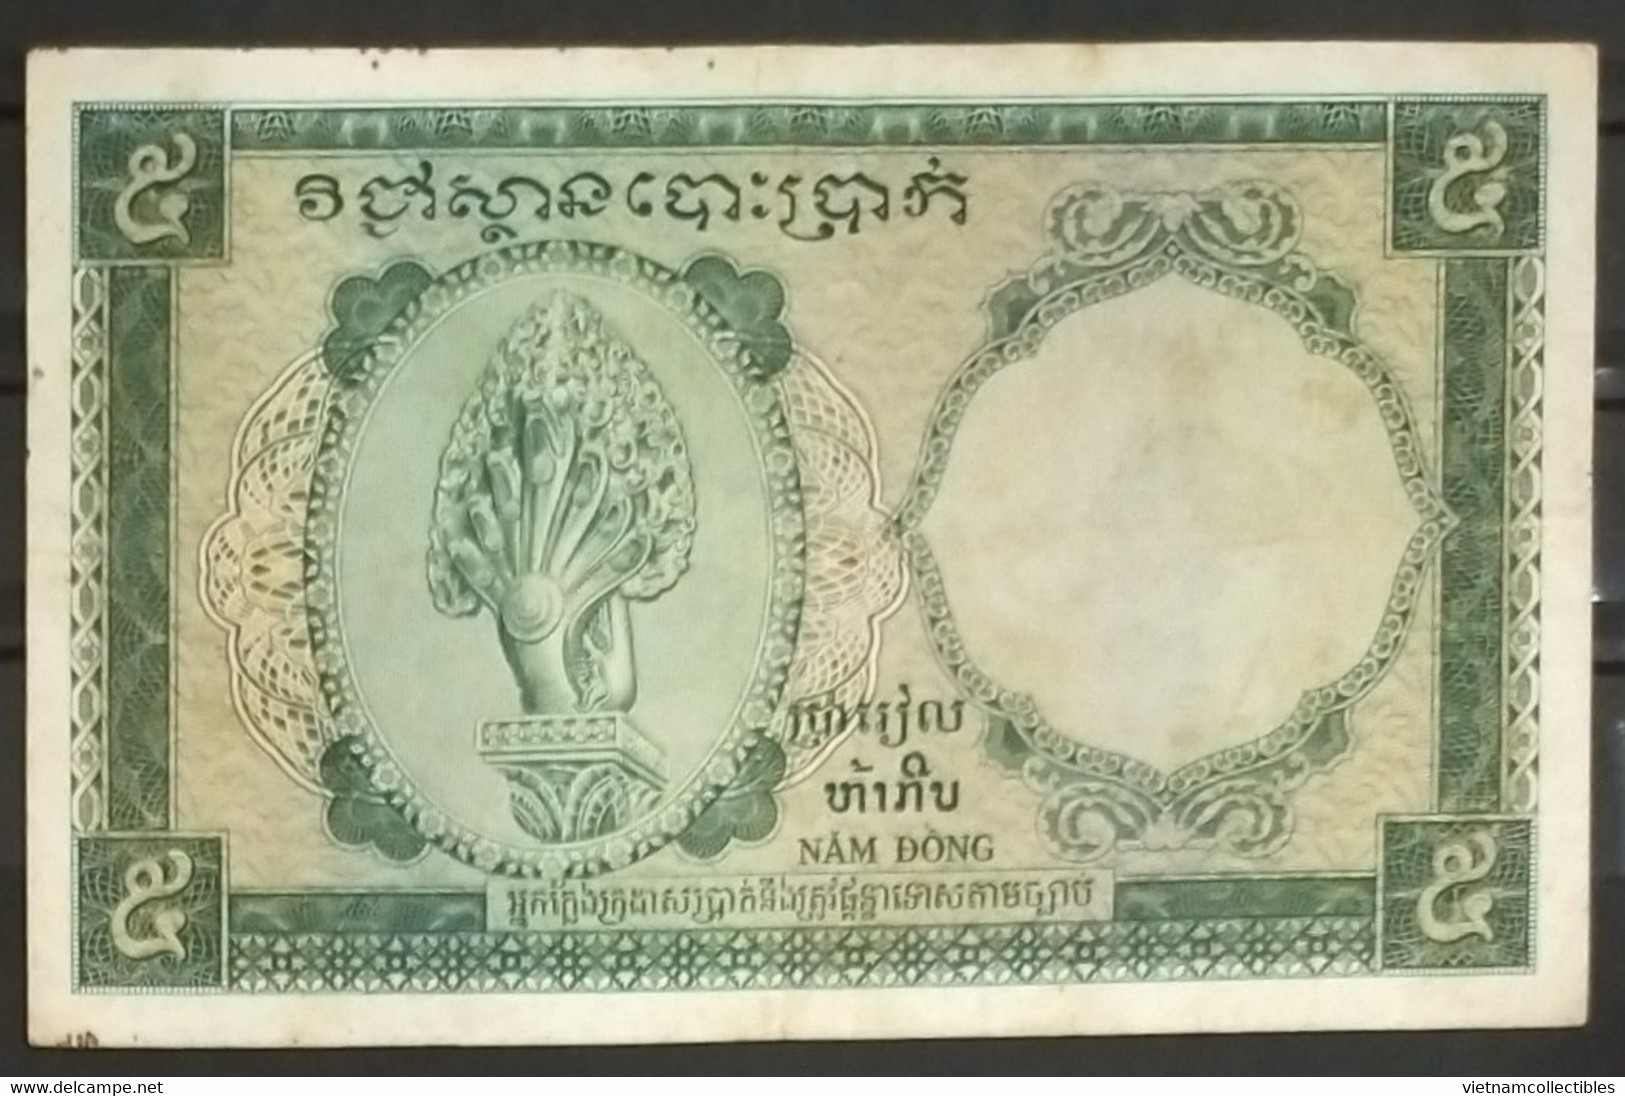 Indochina Indochine Vietnam Viet Nam Laos Cambodia 5 Piastres VF Banknote Note / Billet 1953 - Pick # 95 / 02 Photo - Indochine